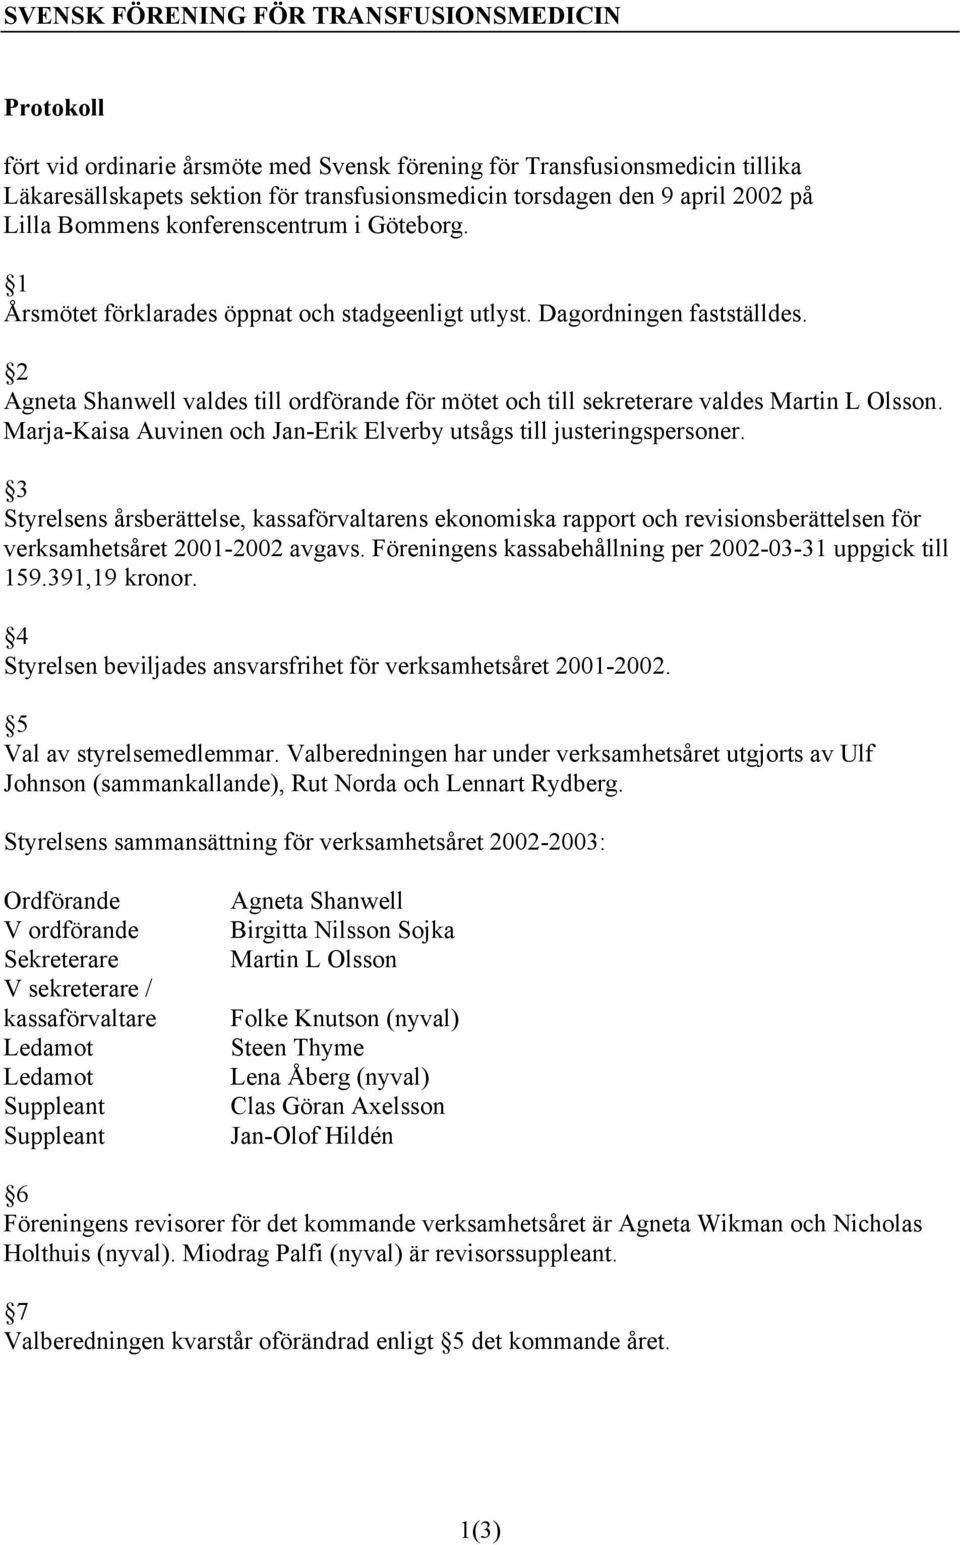 Marja-Kaisa Auvinen och Jan-Erik Elverby utsågs till justeringspersoner. 3 Styrelsens årsberättelse, kassaförvaltarens ekonomiska rapport och revisionsberättelsen för verksamhetsåret 2001-2002 avgavs.